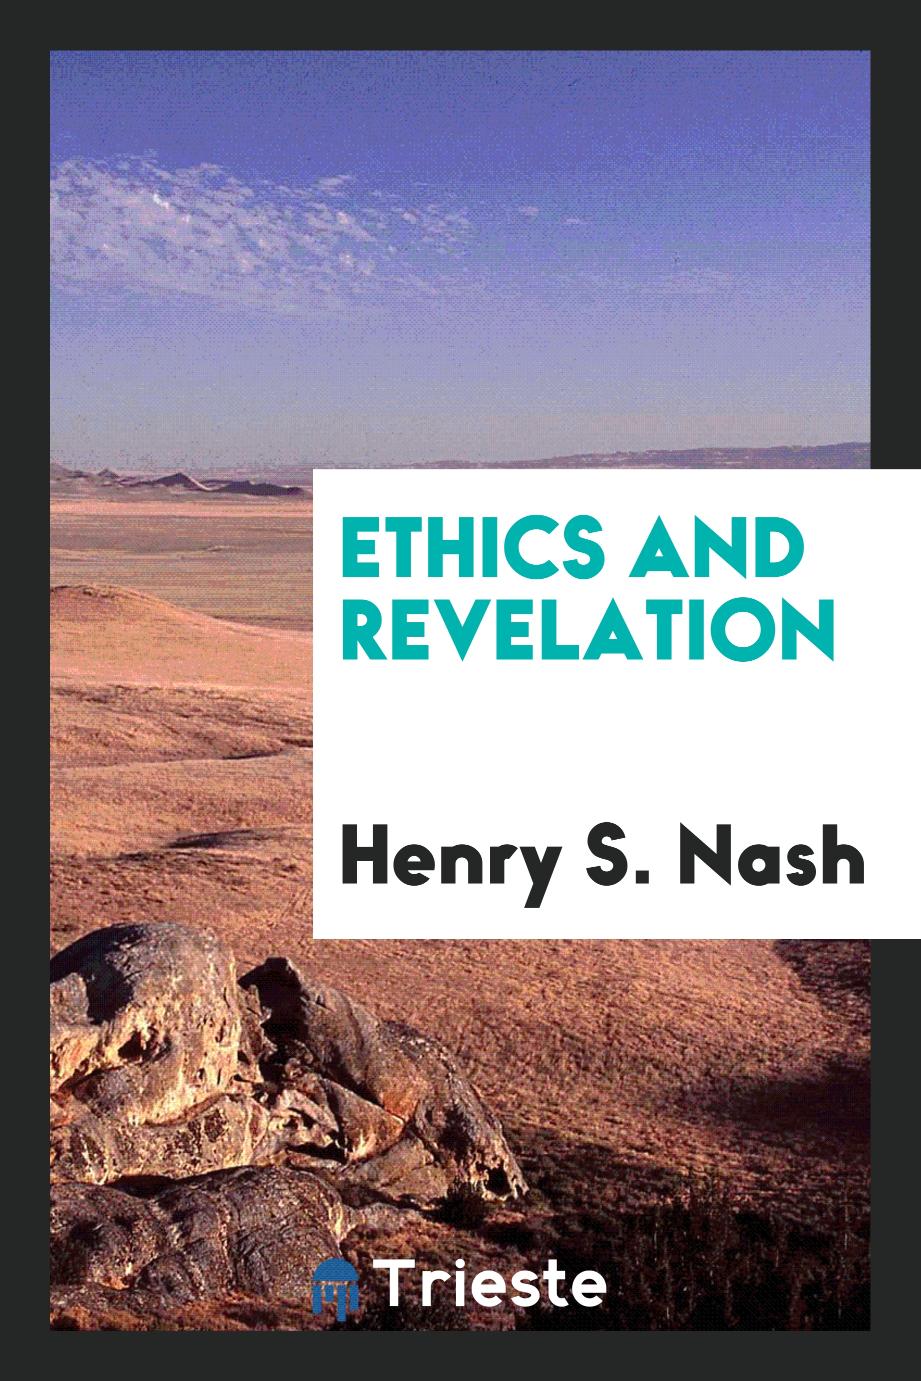 Ethics and revelation